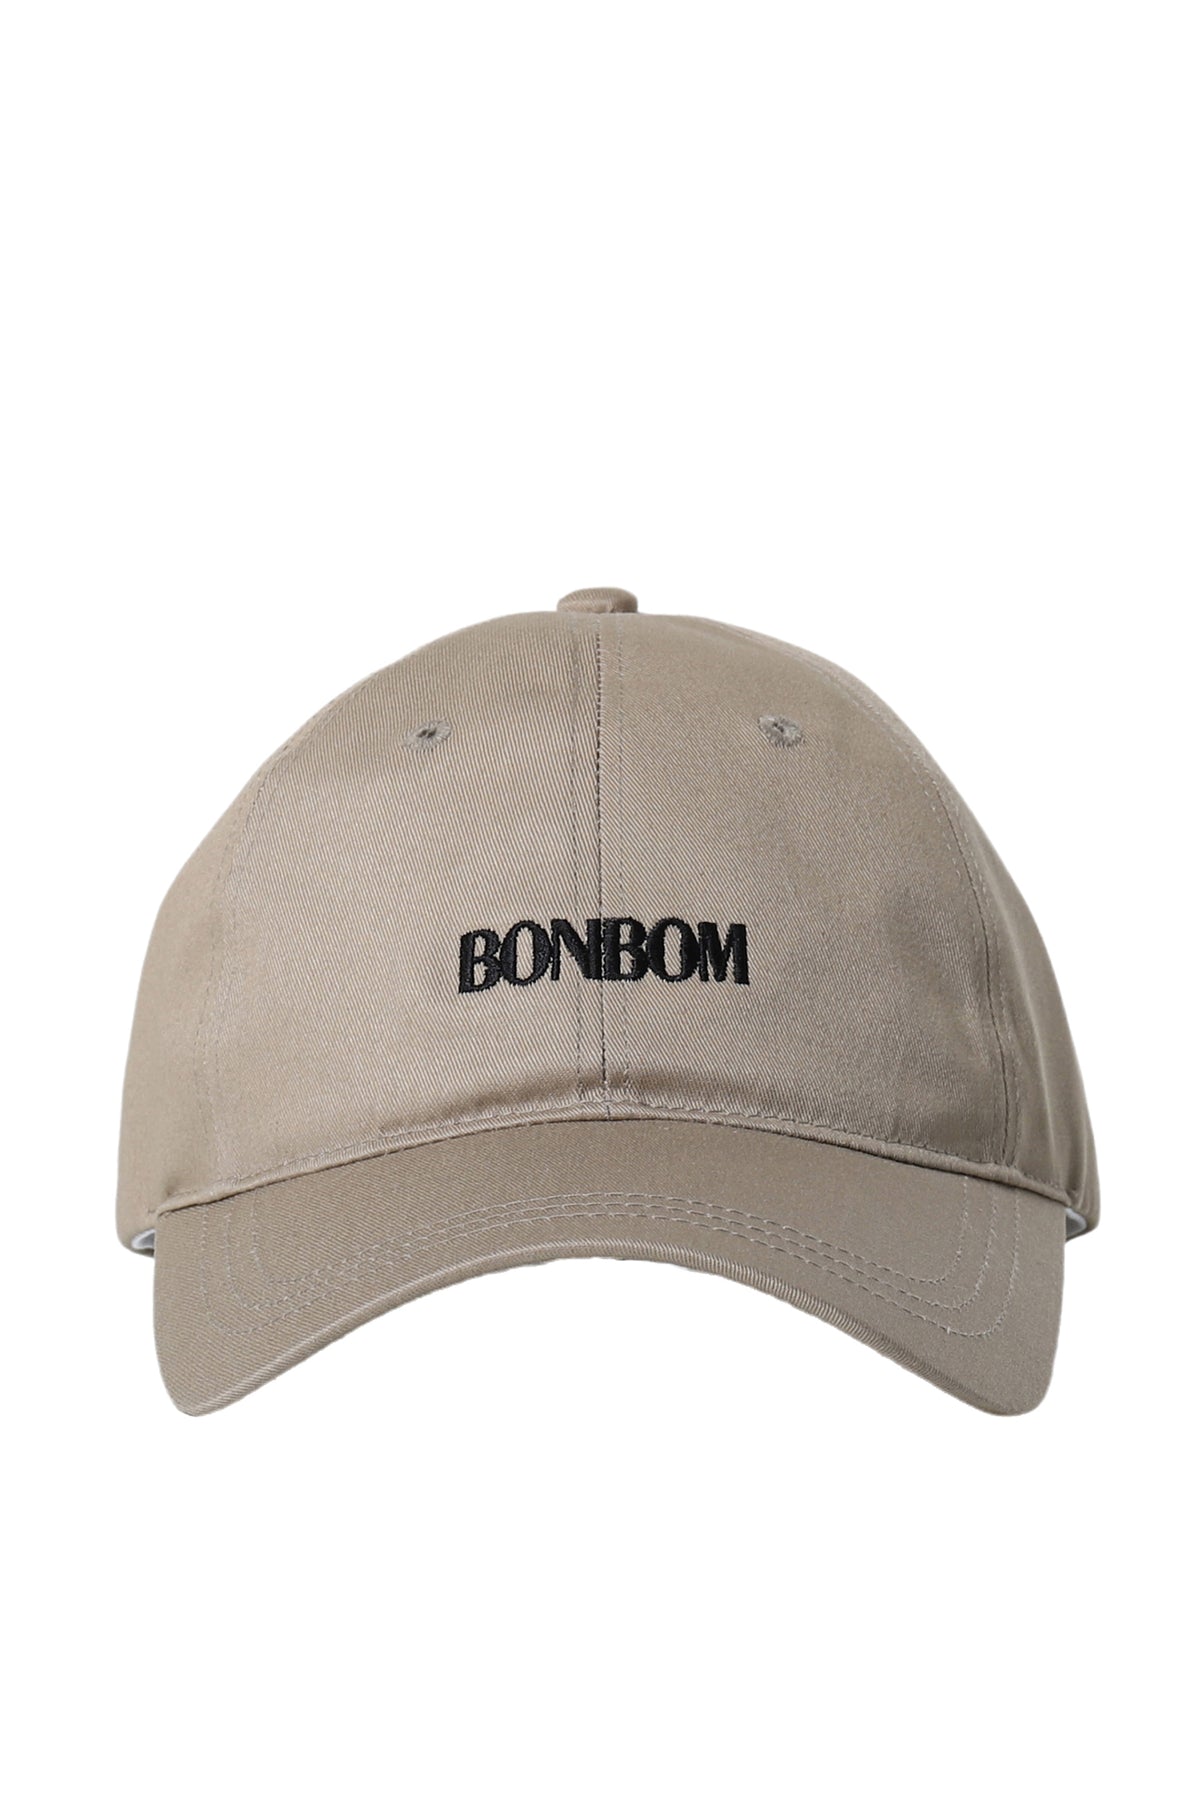 BONBOM LOGO CAP / BEI